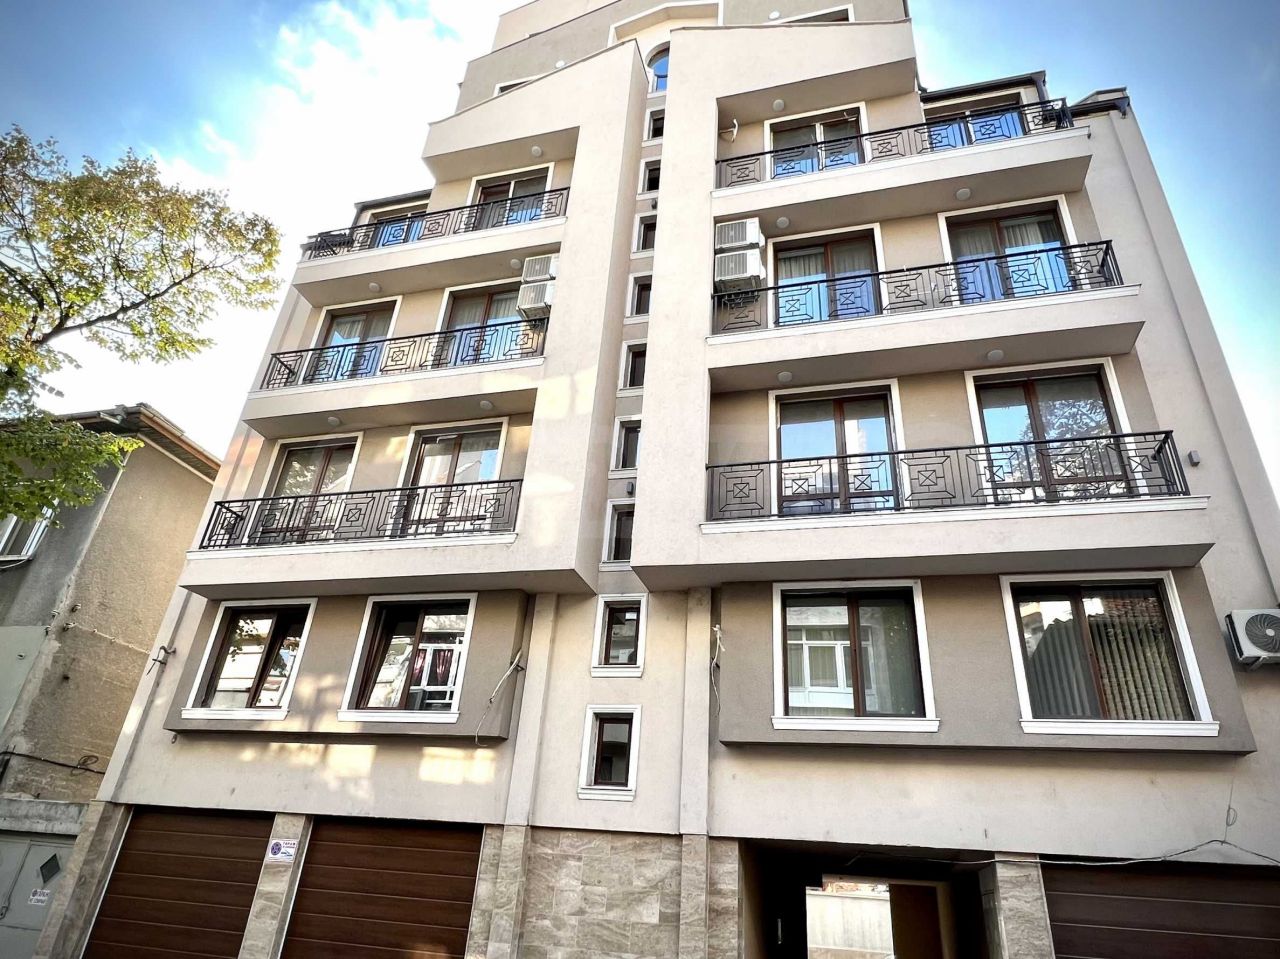 Apartment in Plovdiv, Bulgaria, 80 sq.m - picture 1